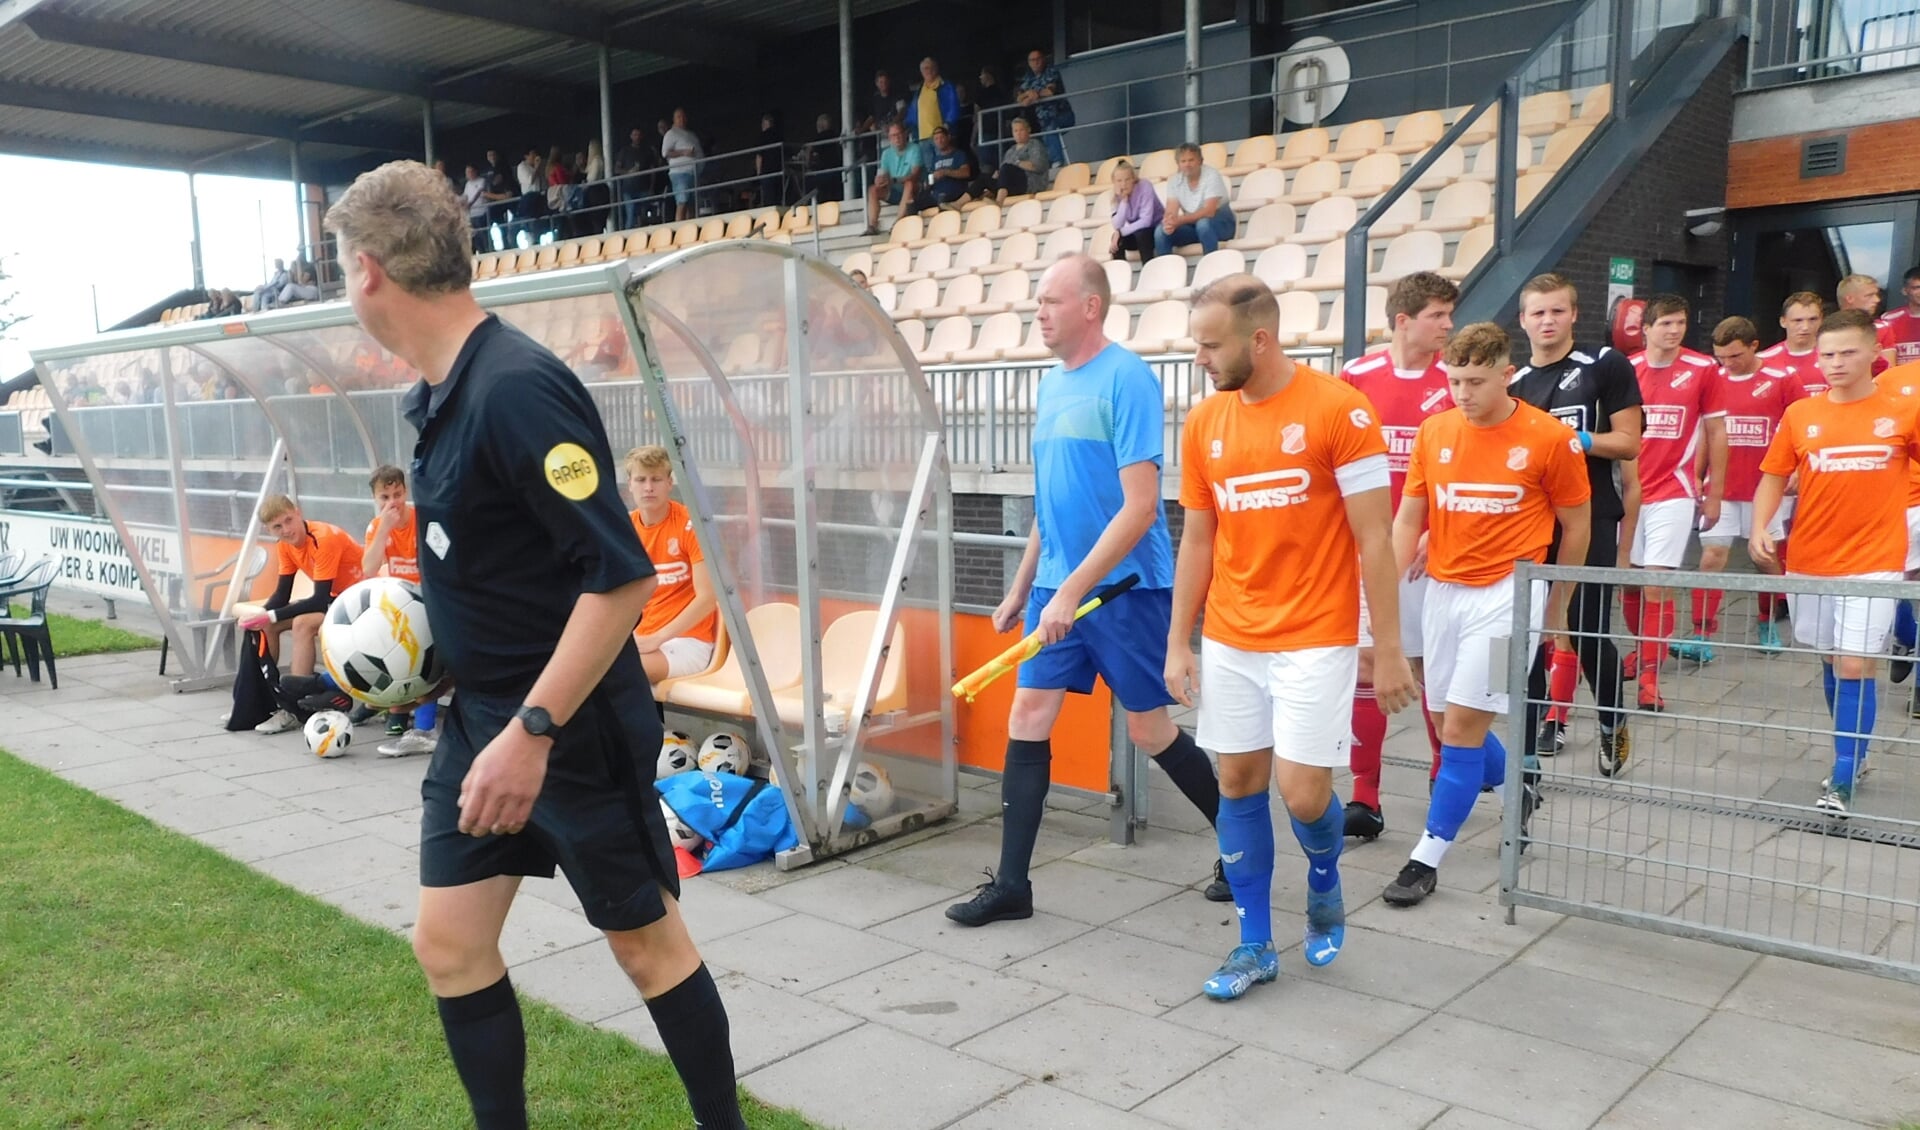 De teams van Westerwolde en Nieuw Buinen betreden de arena voor de bekerwedstrijd. (foto: Harm Jan Pleiter)